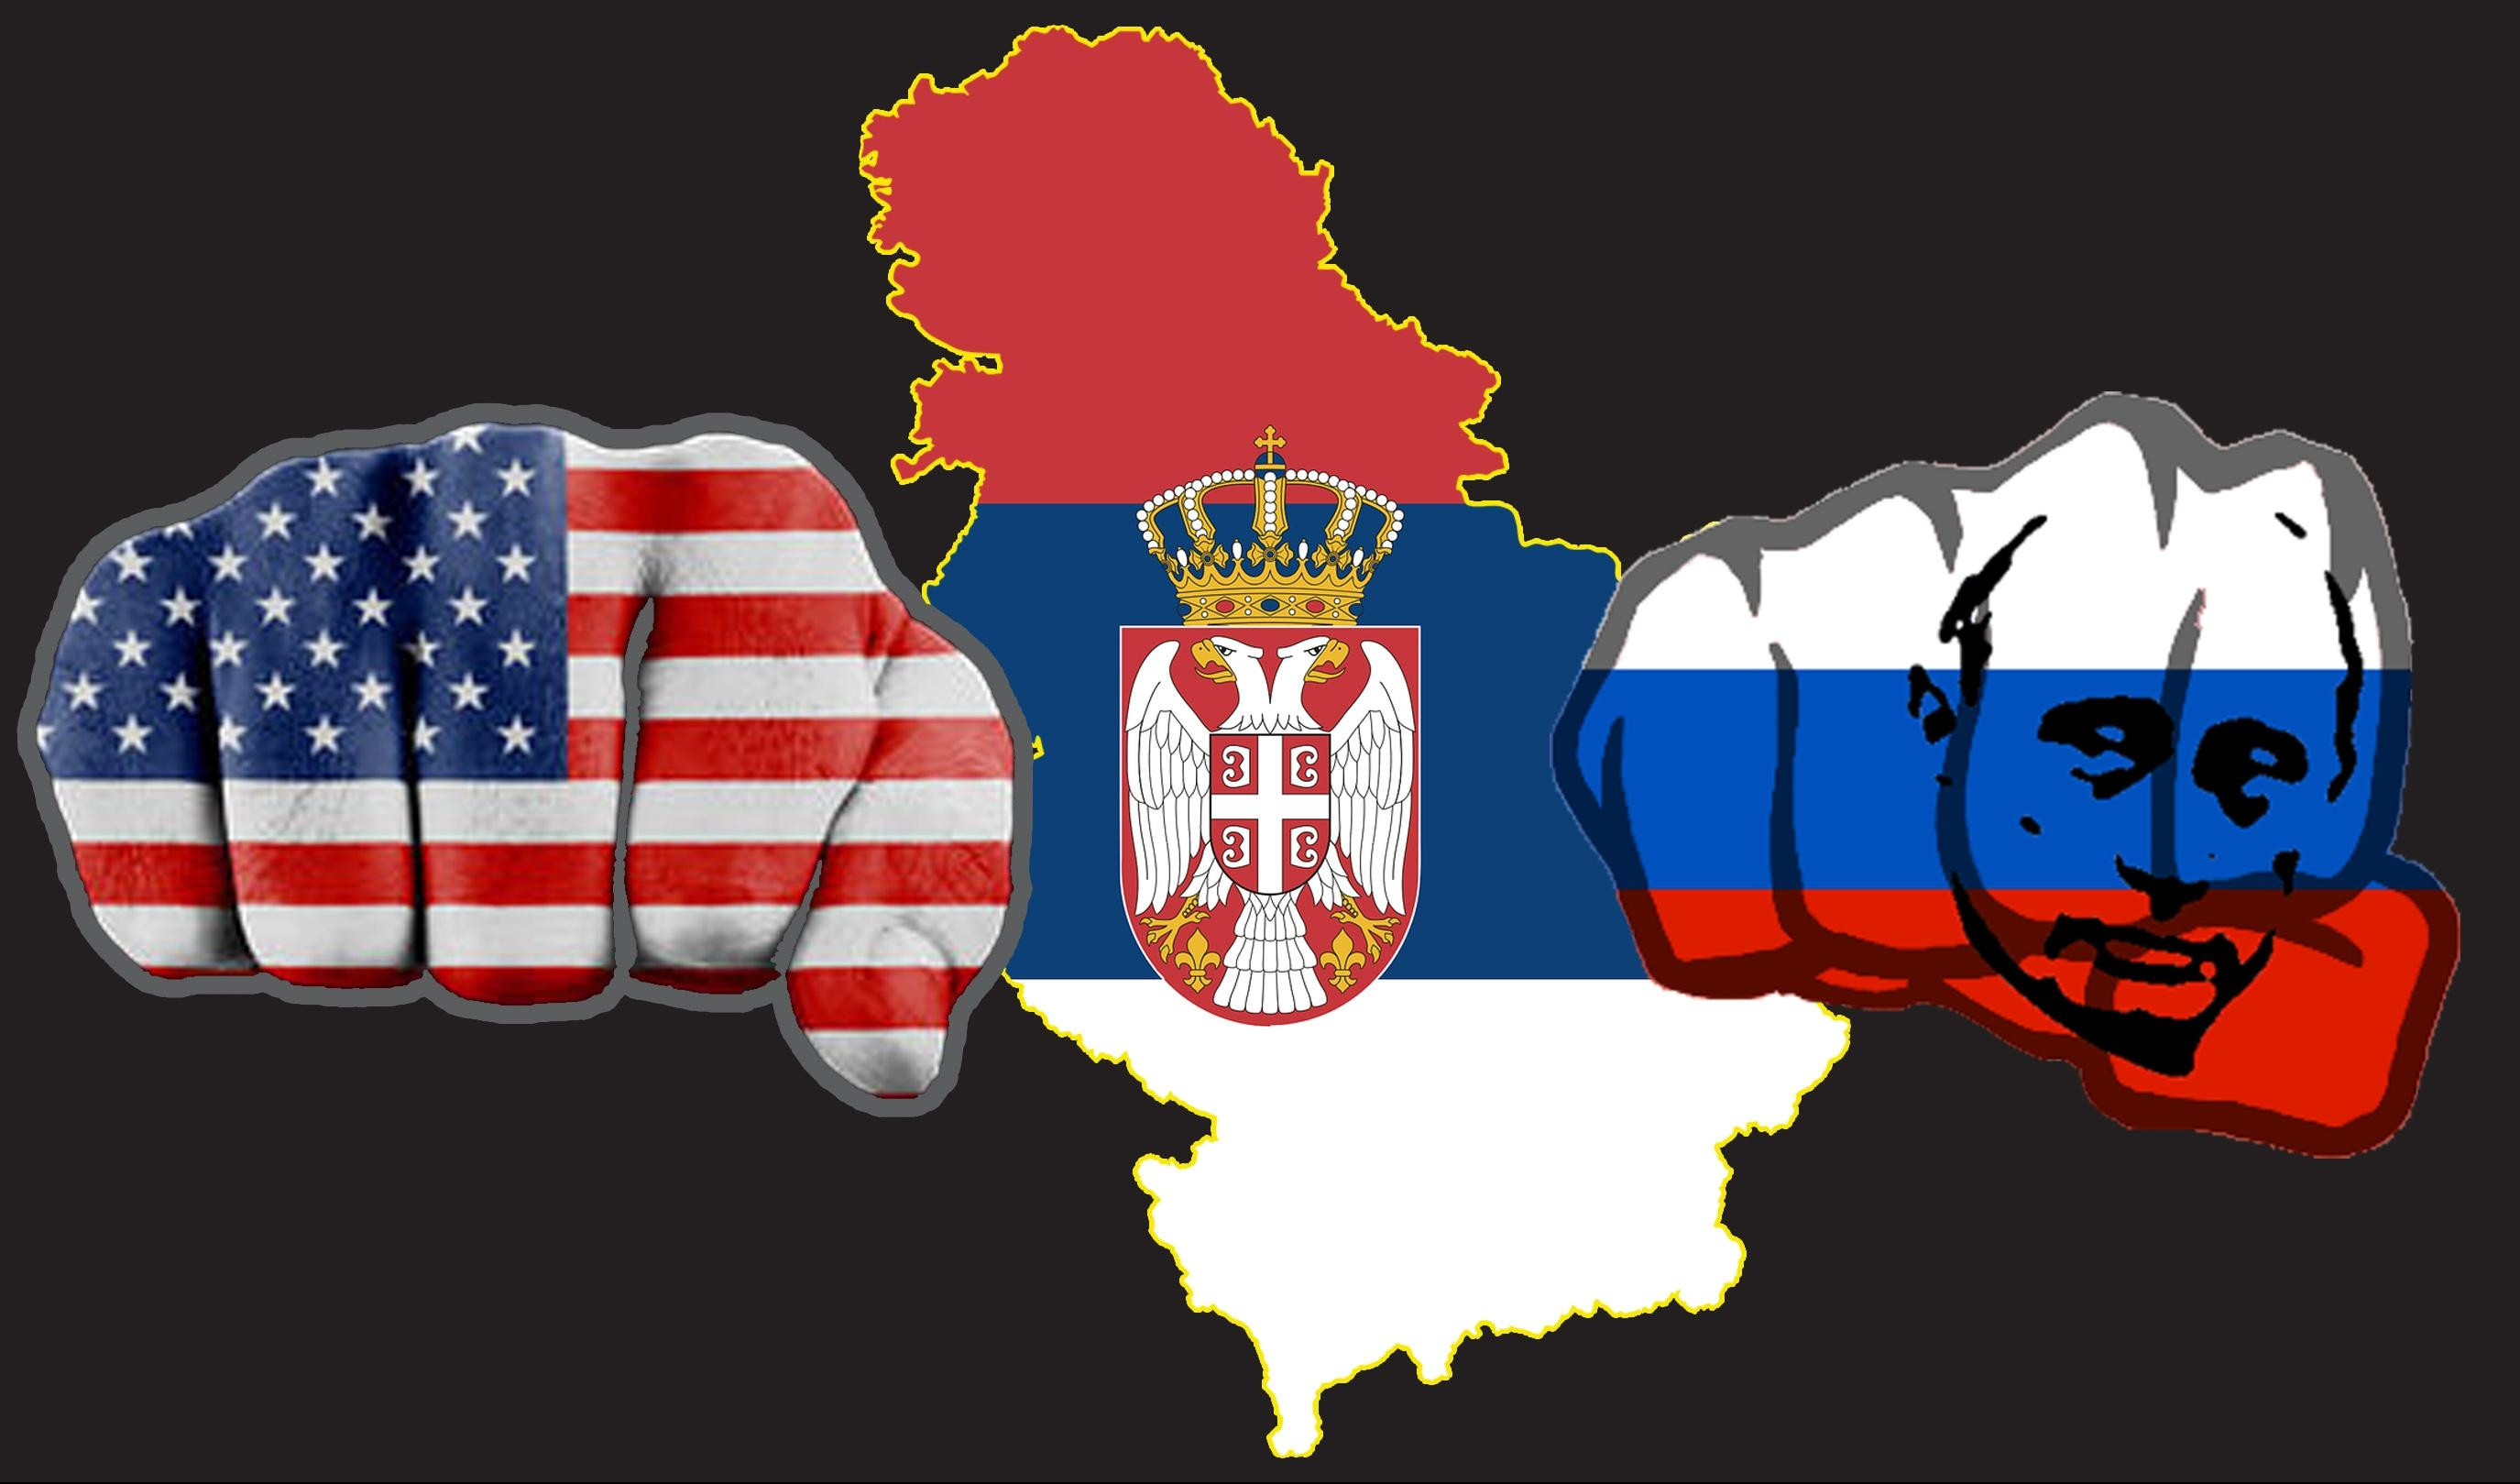 RUSKI EKSPERTI UPOZORAVAJU NA PRLJAVI AMERIČKI PLAN: Vašington hoće da vas okrene protiv Rusije! SRBIJO, SAMO MUDRO!